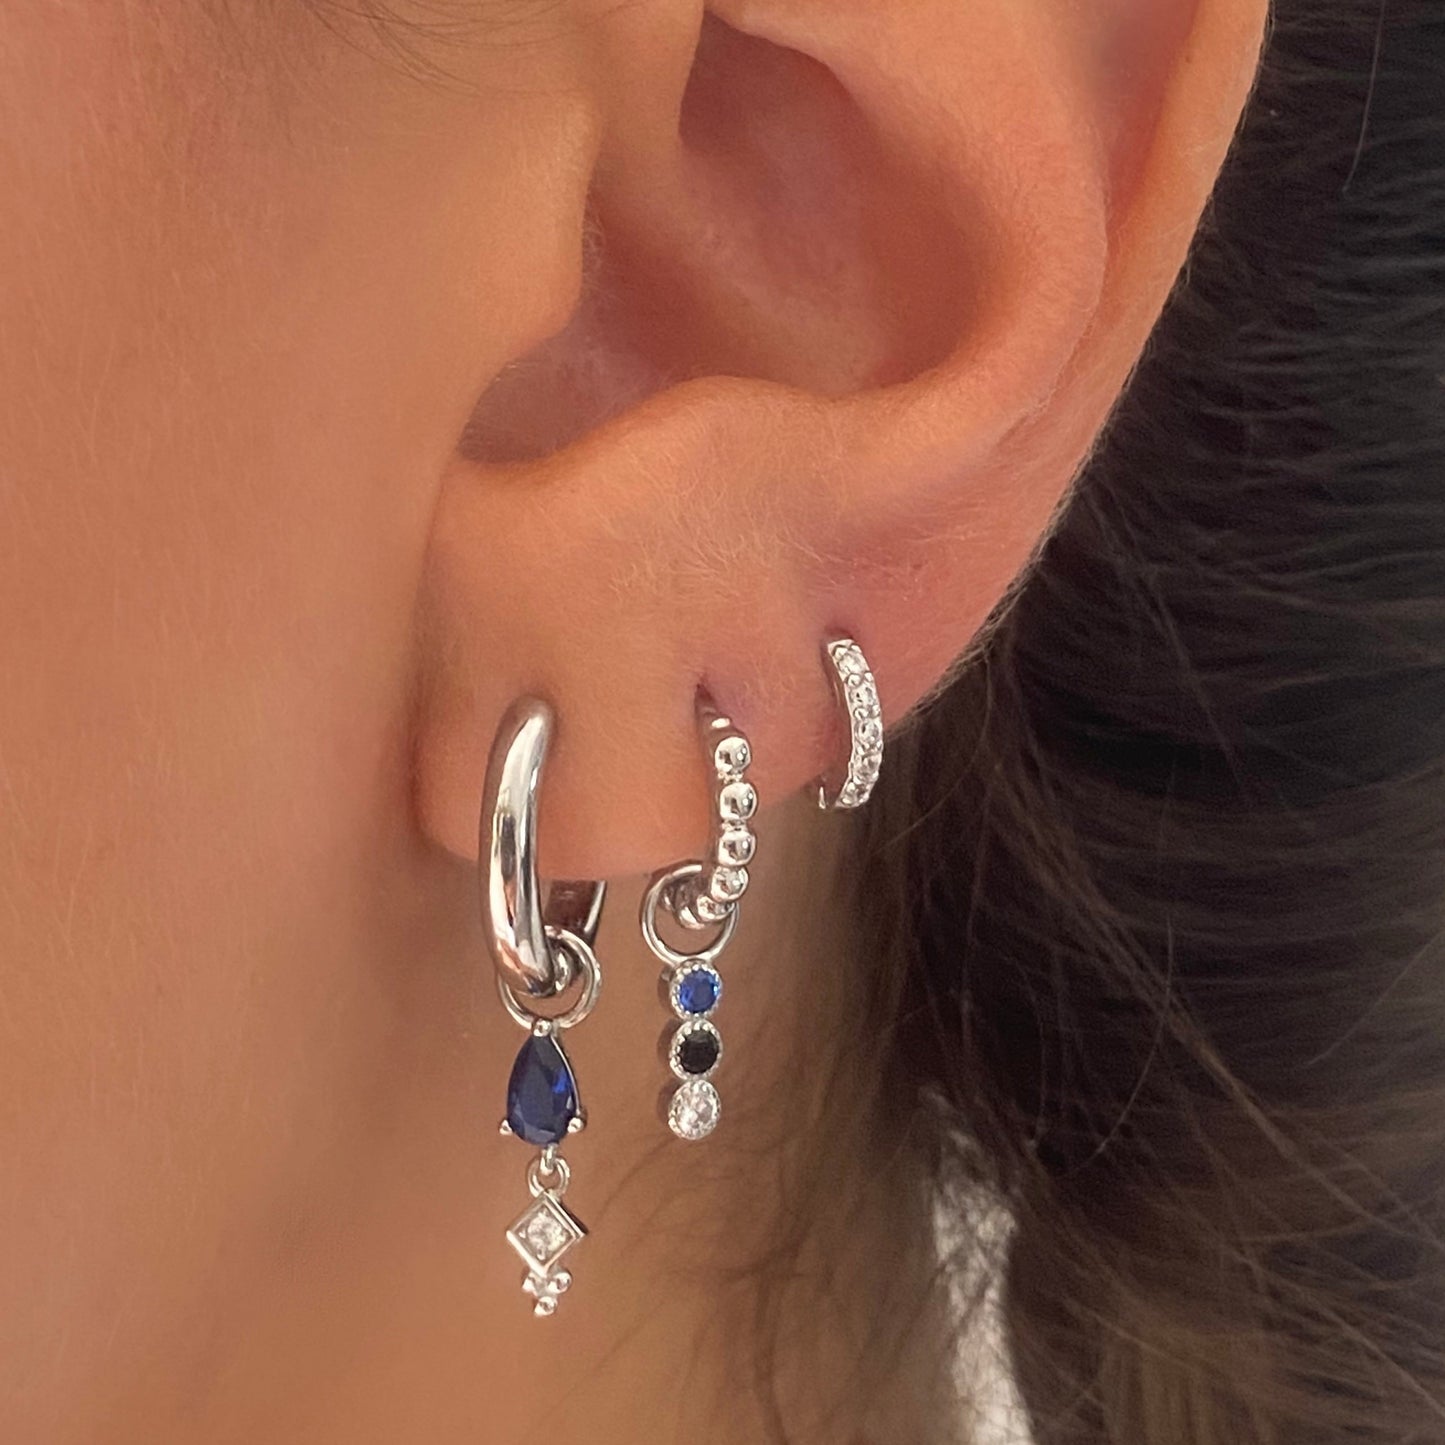 Blue Teardrop Dangle Earring Gift Set